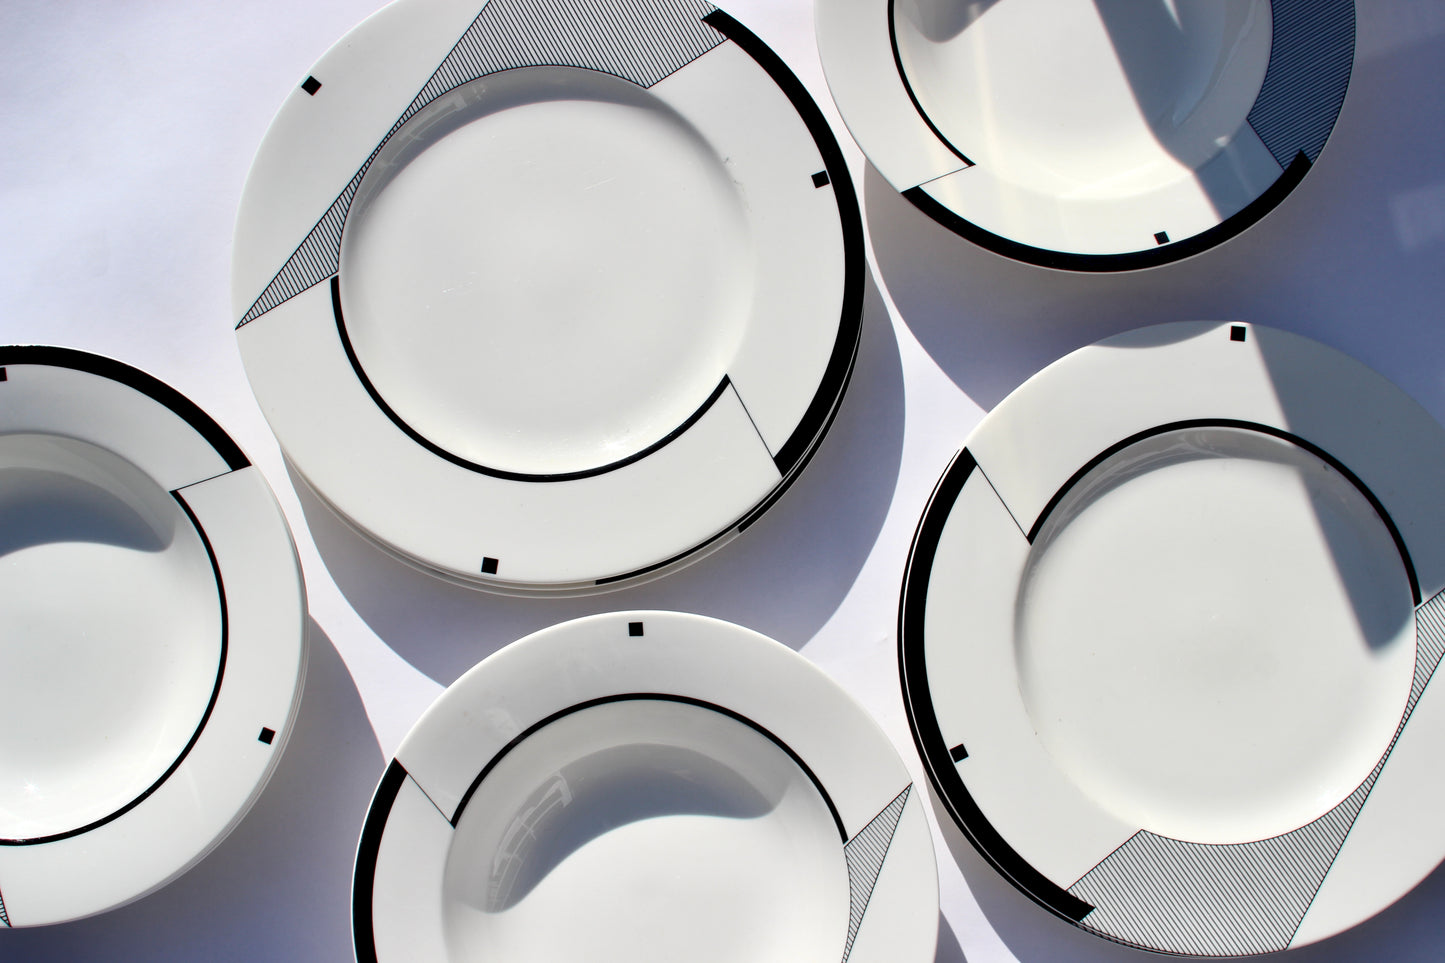 postmodern dinnerware sets